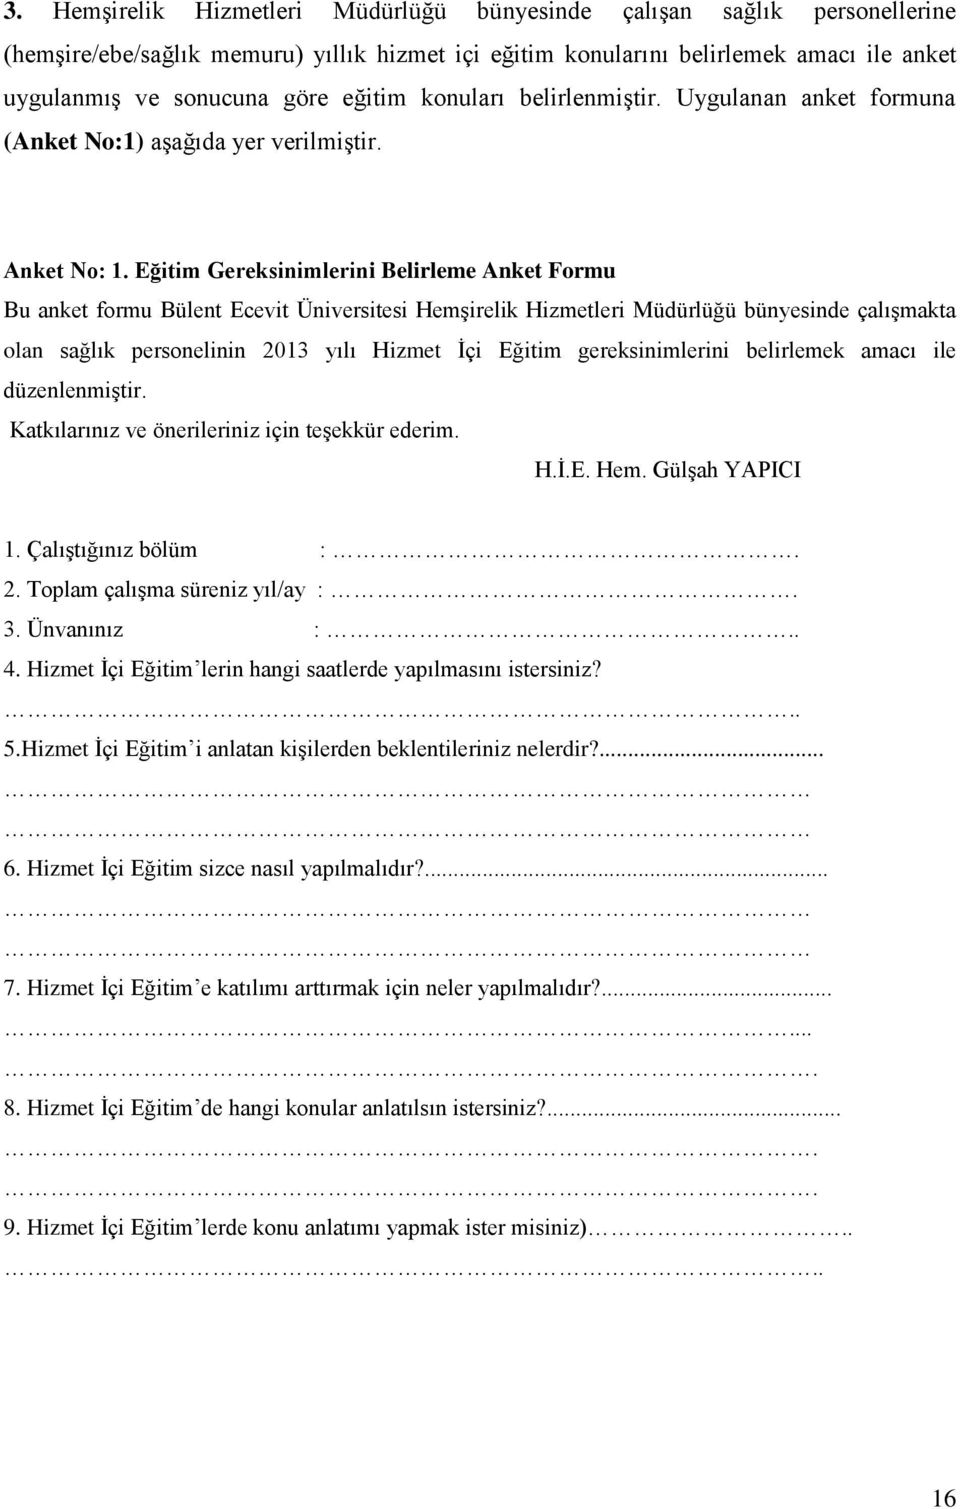 Eğitim Gereksinimlerini Belirleme Anket Formu Bu anket formu Bülent Ecevit Üniversitesi Hemşirelik Hizmetleri Müdürlüğü bünyesinde çalışmakta olan sağlık personelinin 2013 yılı Hizmet İçi Eğitim